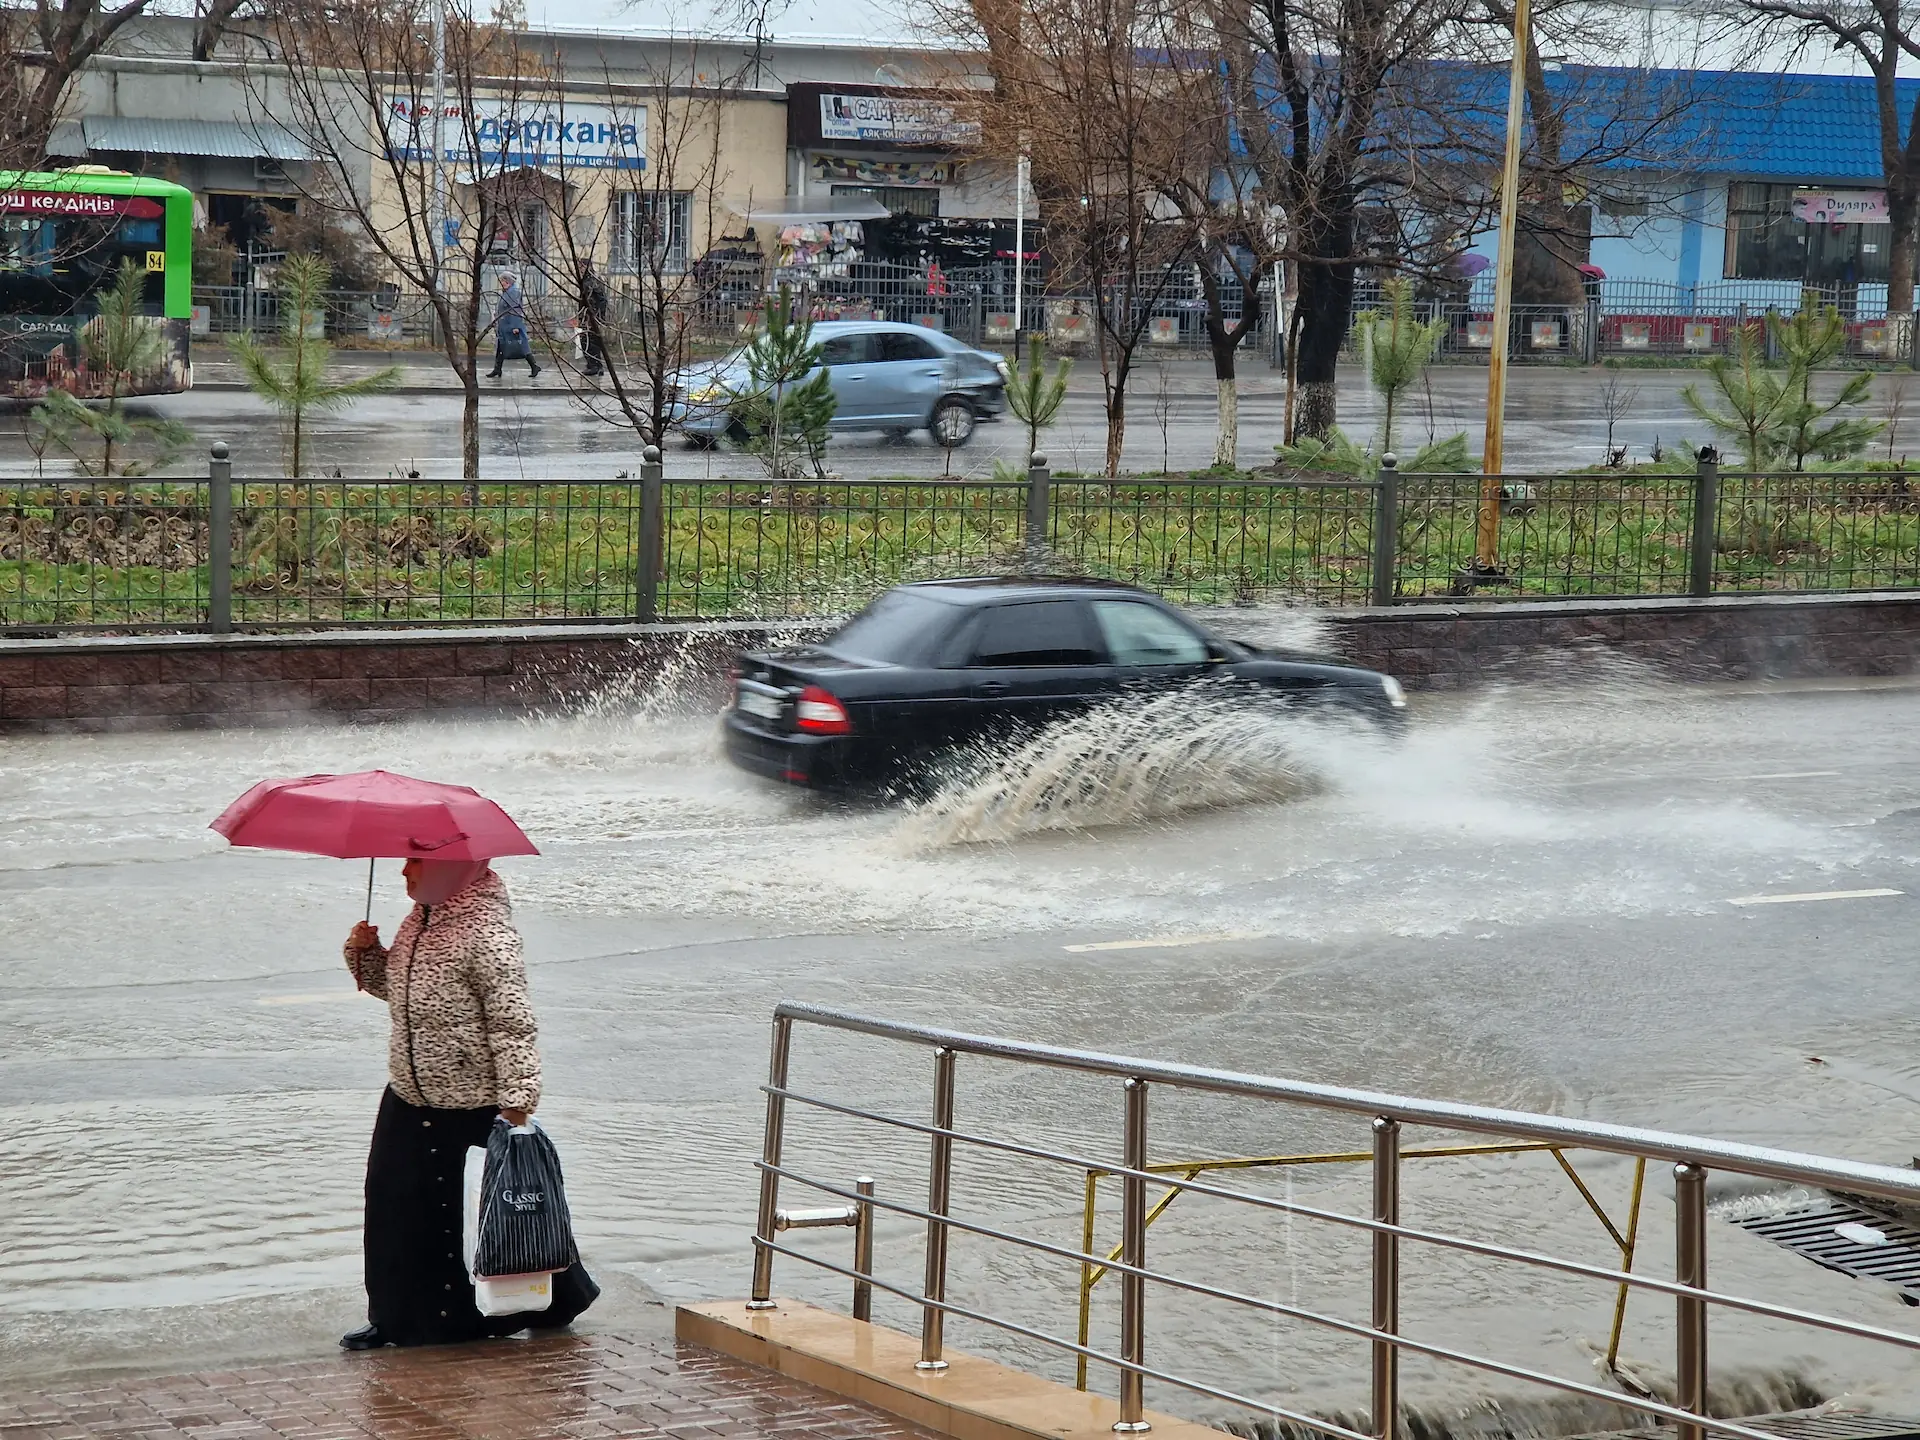 Une dame passe avec un parapluie, une voiture roule dans une grosse flaque, créant une énorme éclaboussure.